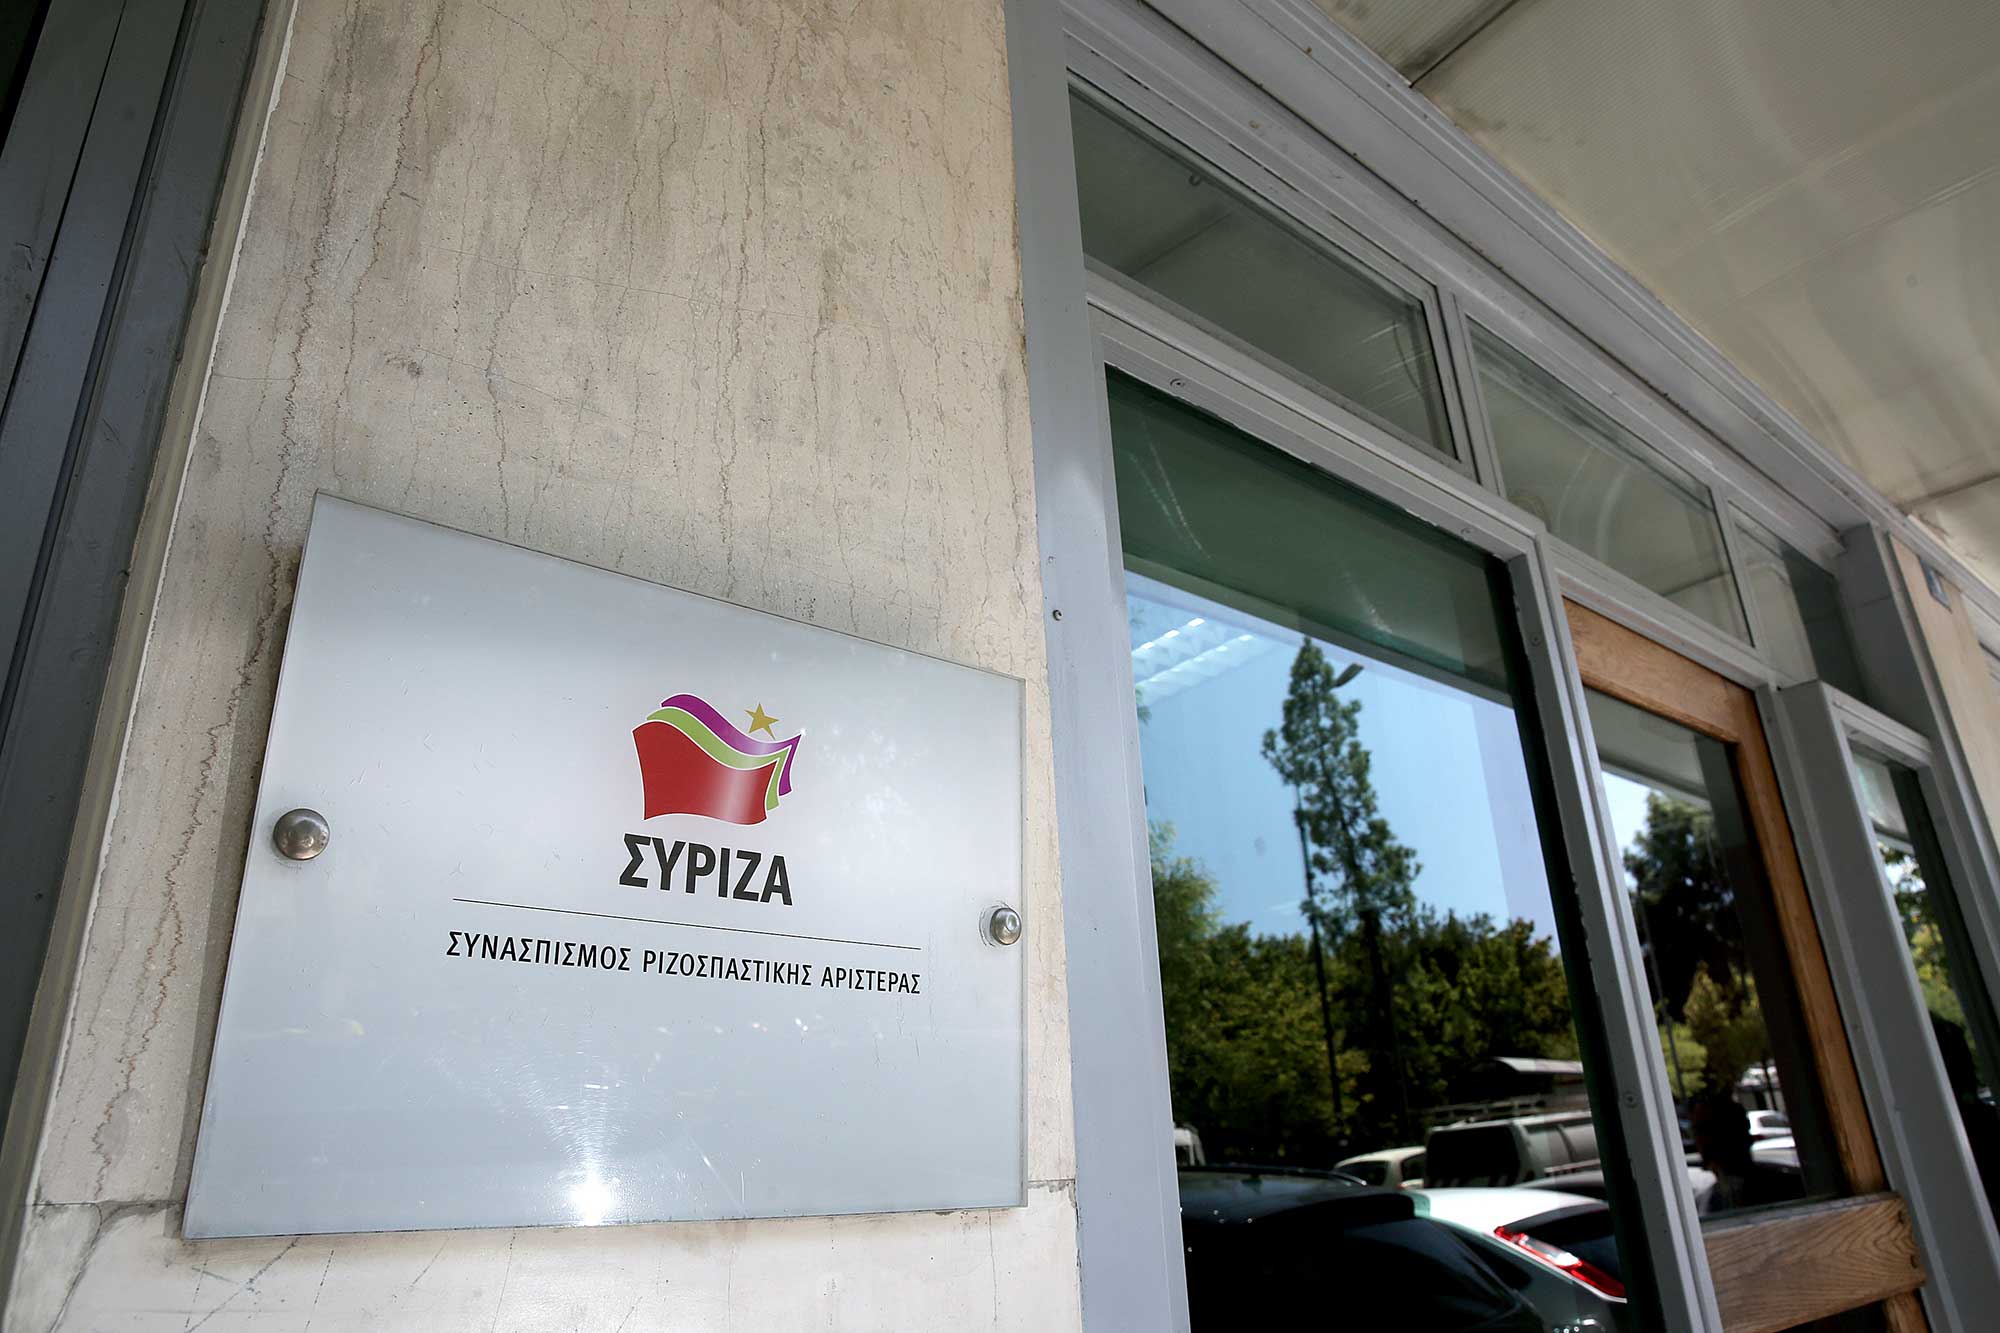 ΣΥΡΙΖΑ:Ανέξοδες υποσχέσεις οι εξαγγελίες Μητσοτάκη για 30 έργα στη Θεσσαλονίκη